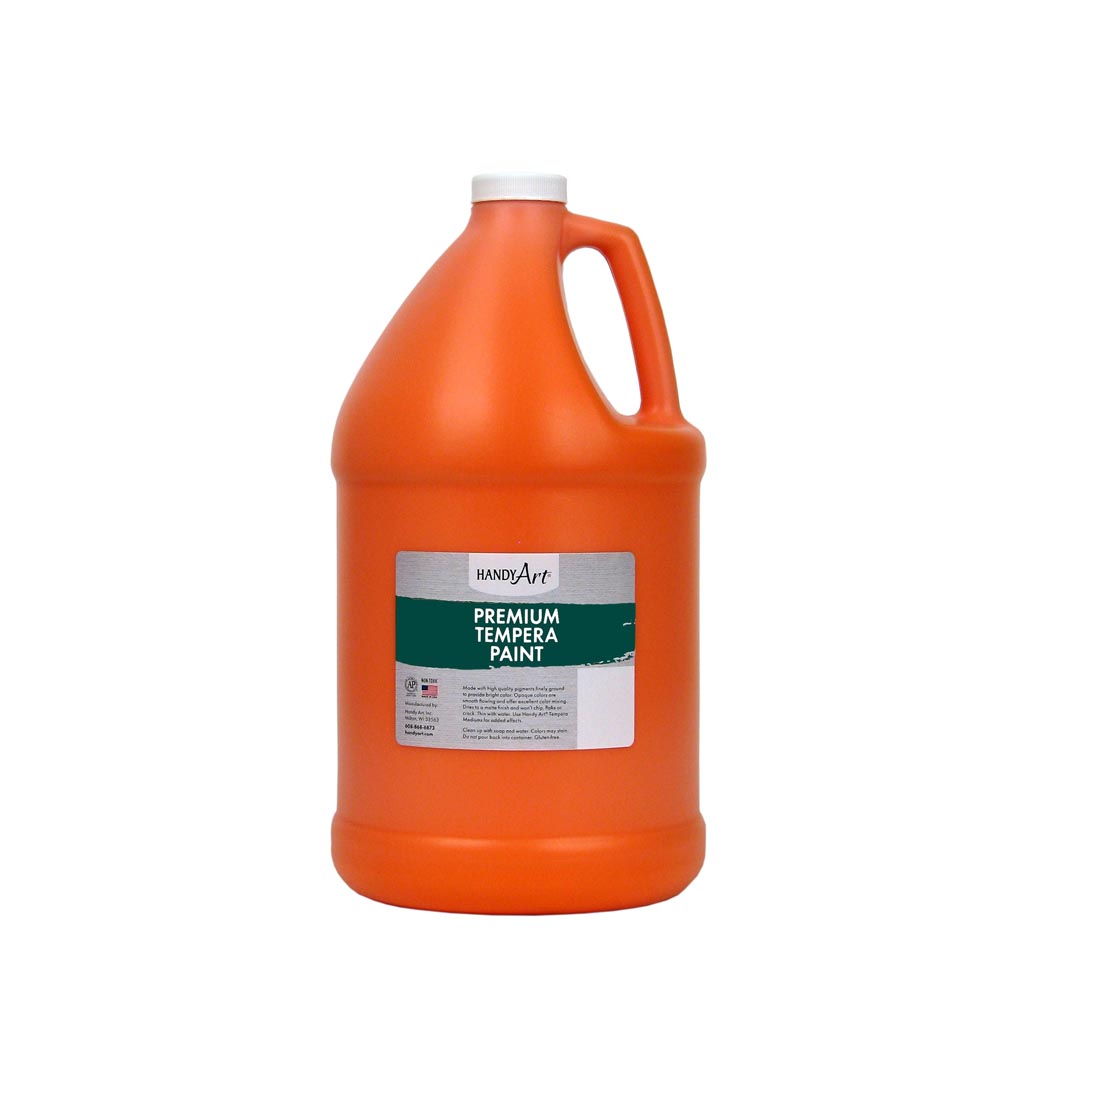 Gallon of Orange Handy Art Premium Tempera Paint